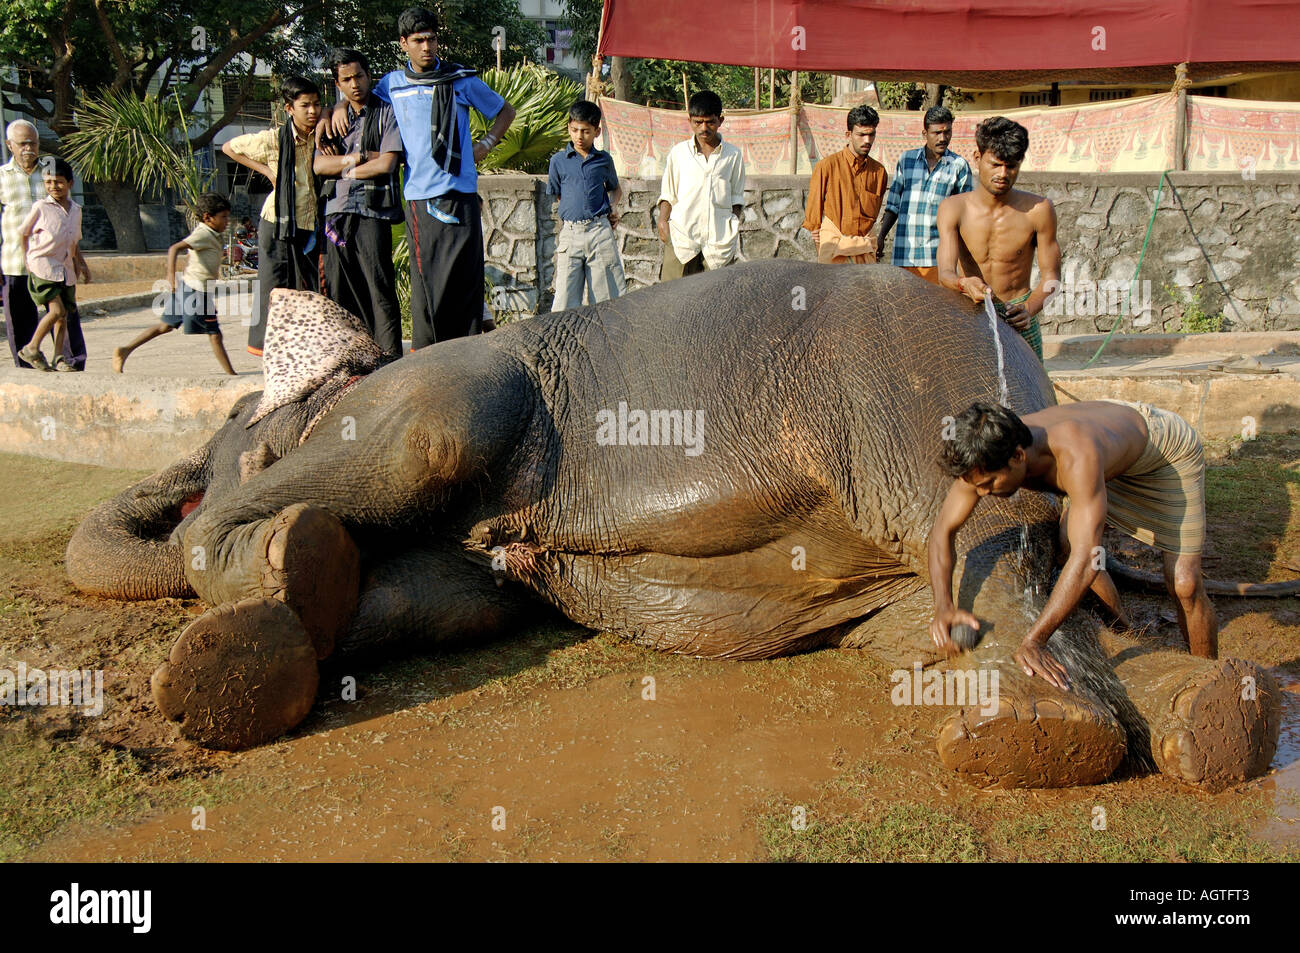 HMA79935 éléphant asiatique Elephas maximus accordée par l'Inde Mahavat baignoire Banque D'Images